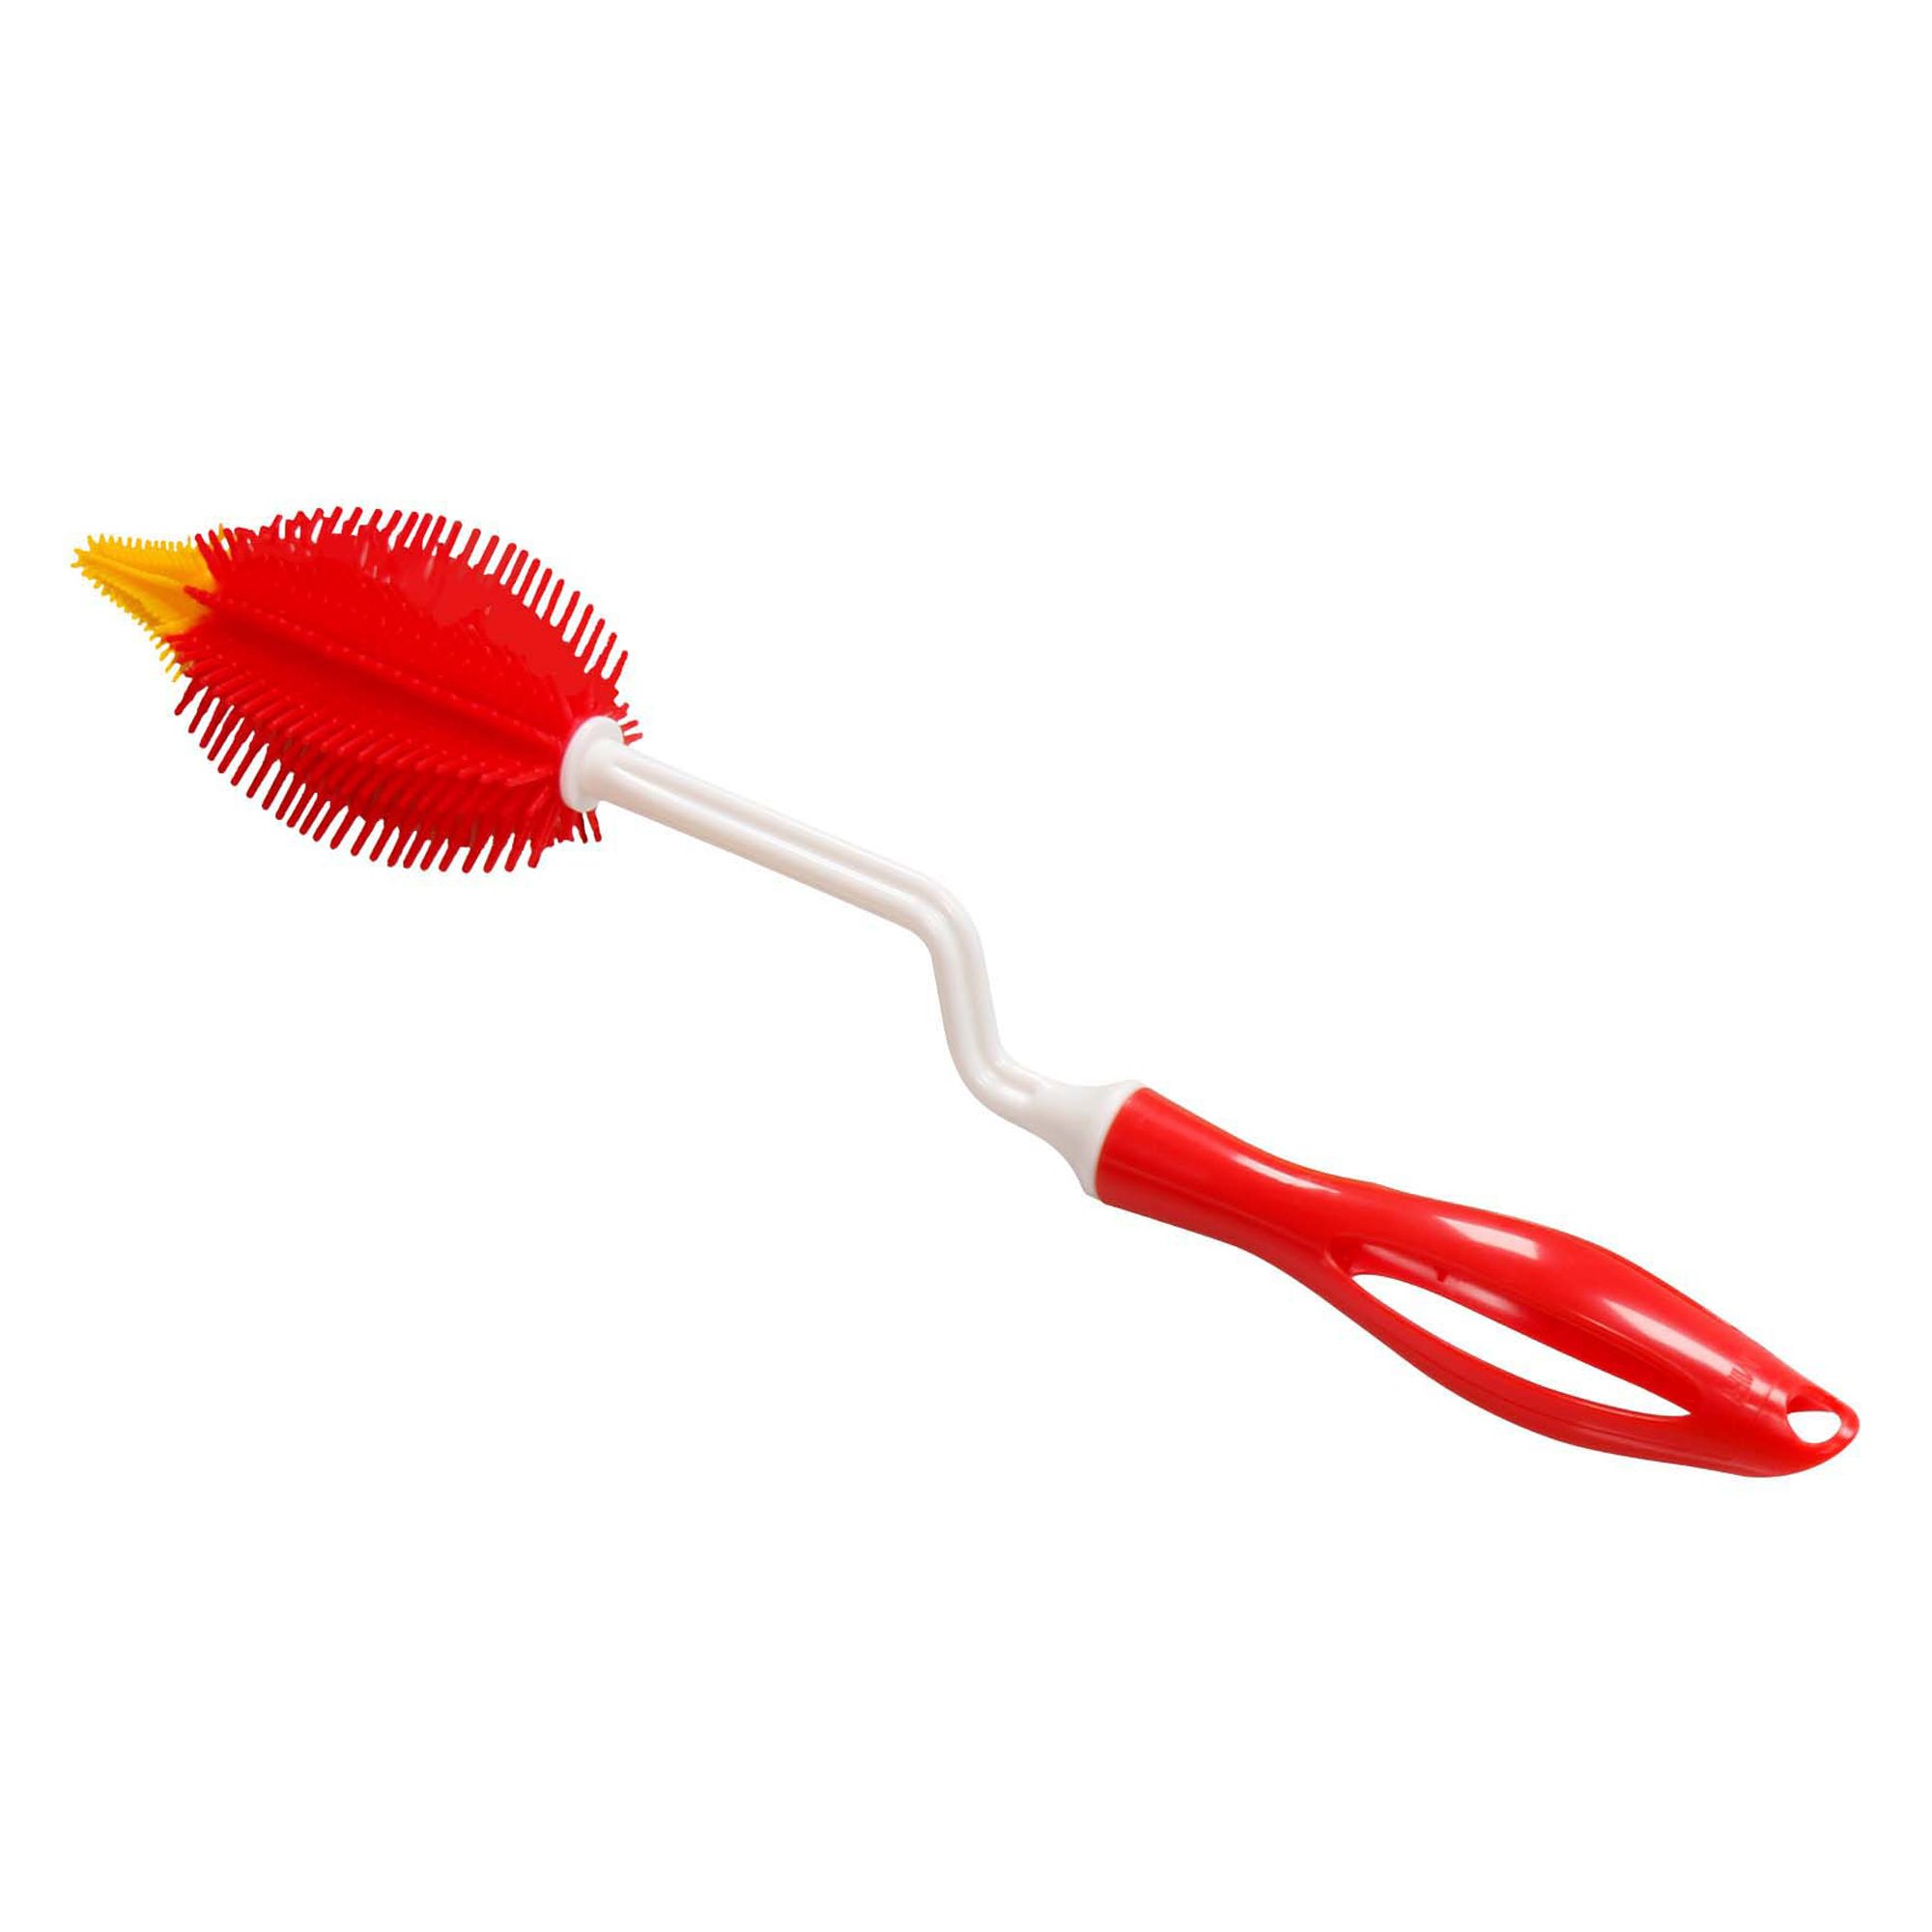 STONELINE® Cepillo de silicona para botellas con mango giratorio 35 cm, rojo